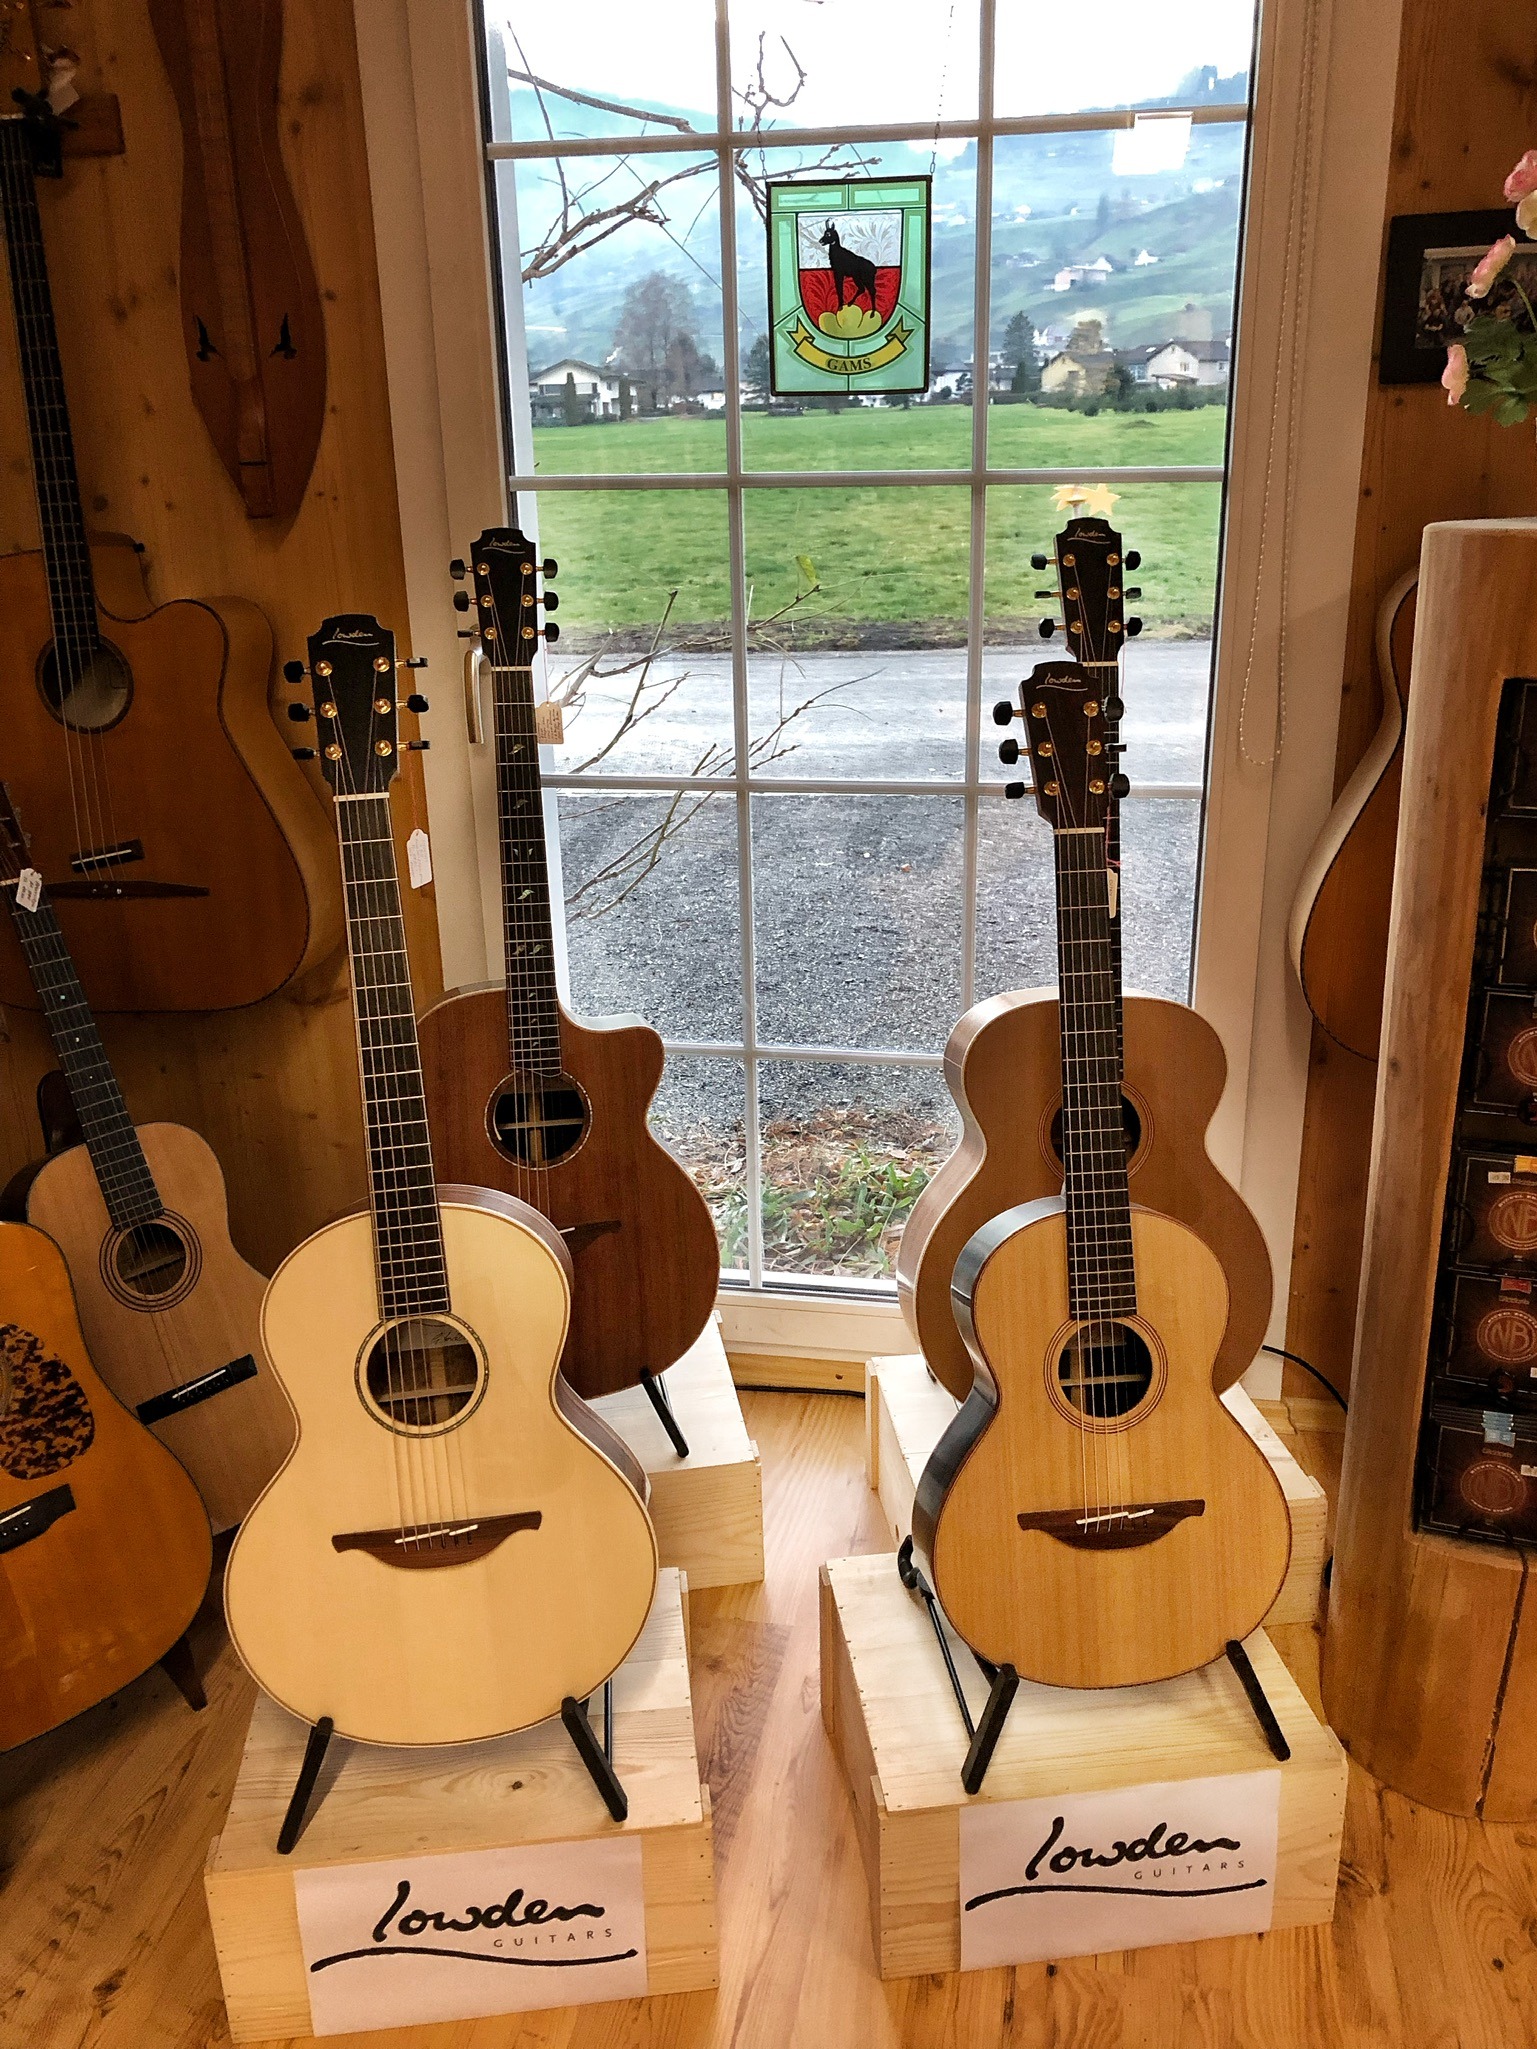 Sie sehe vier Gitarren aus Ireland